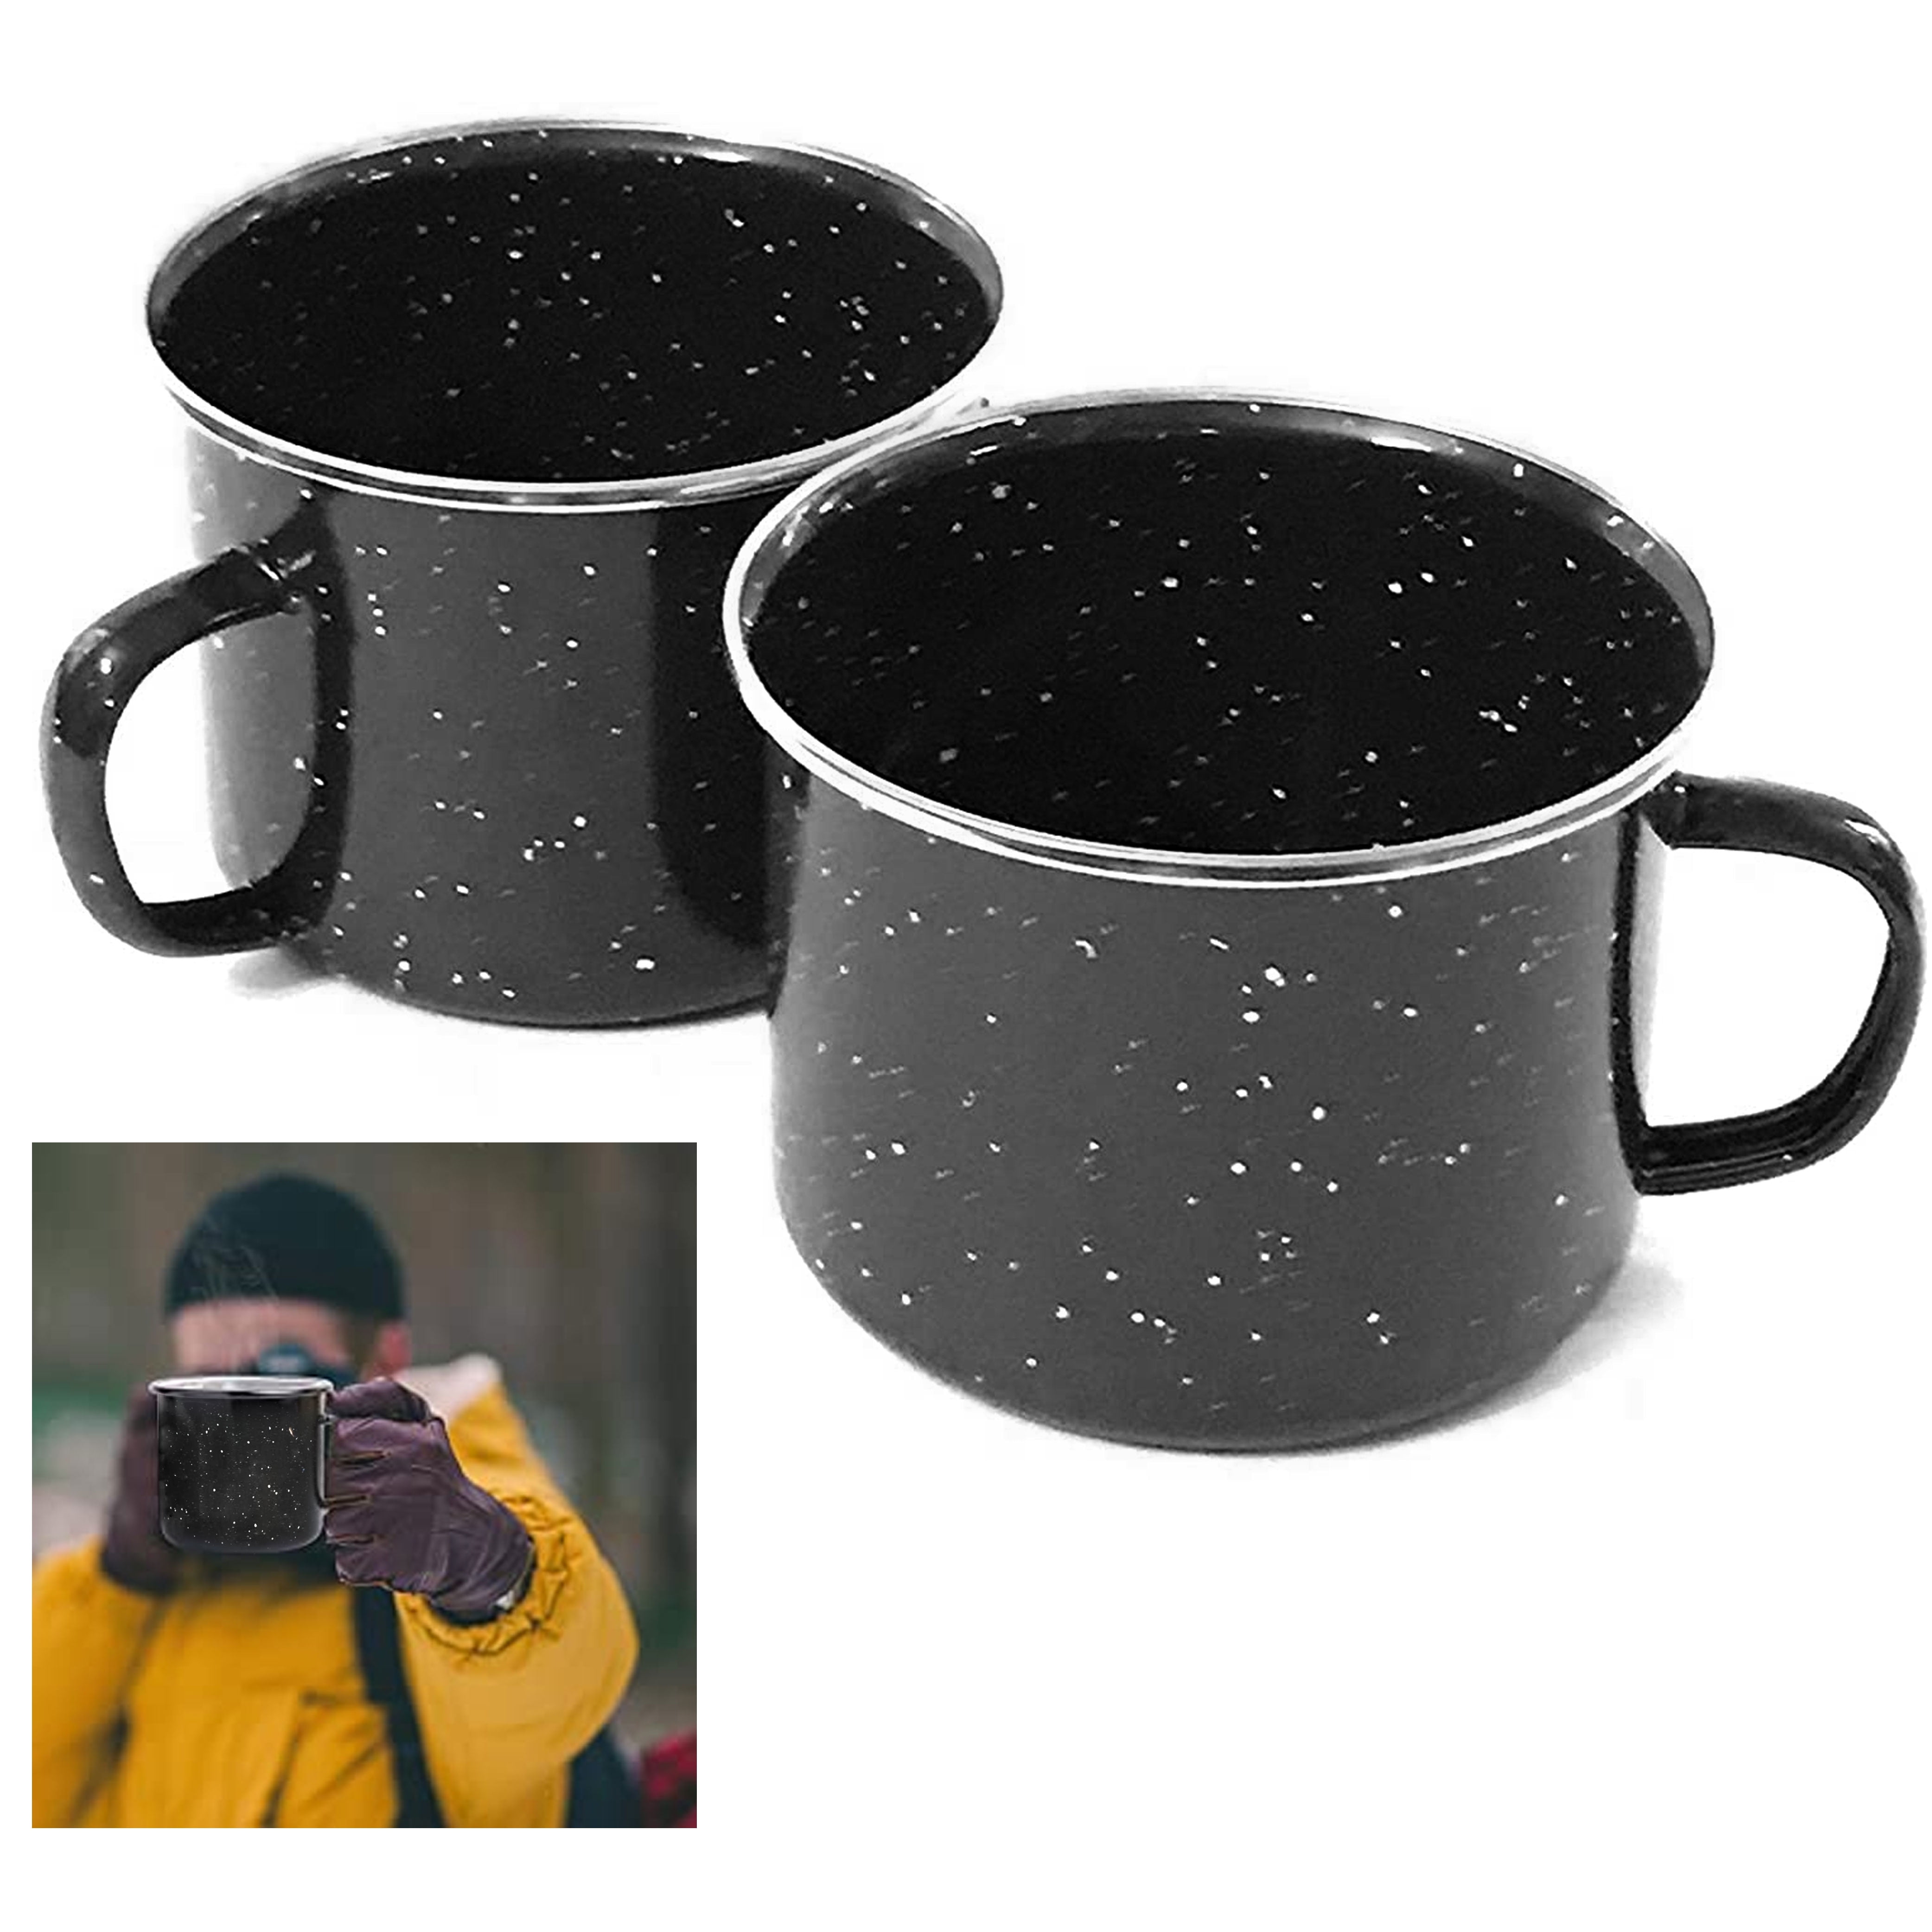 Camping Mug 16 Oz Enamel Black- Set of Two - Drinking Cups Mugs